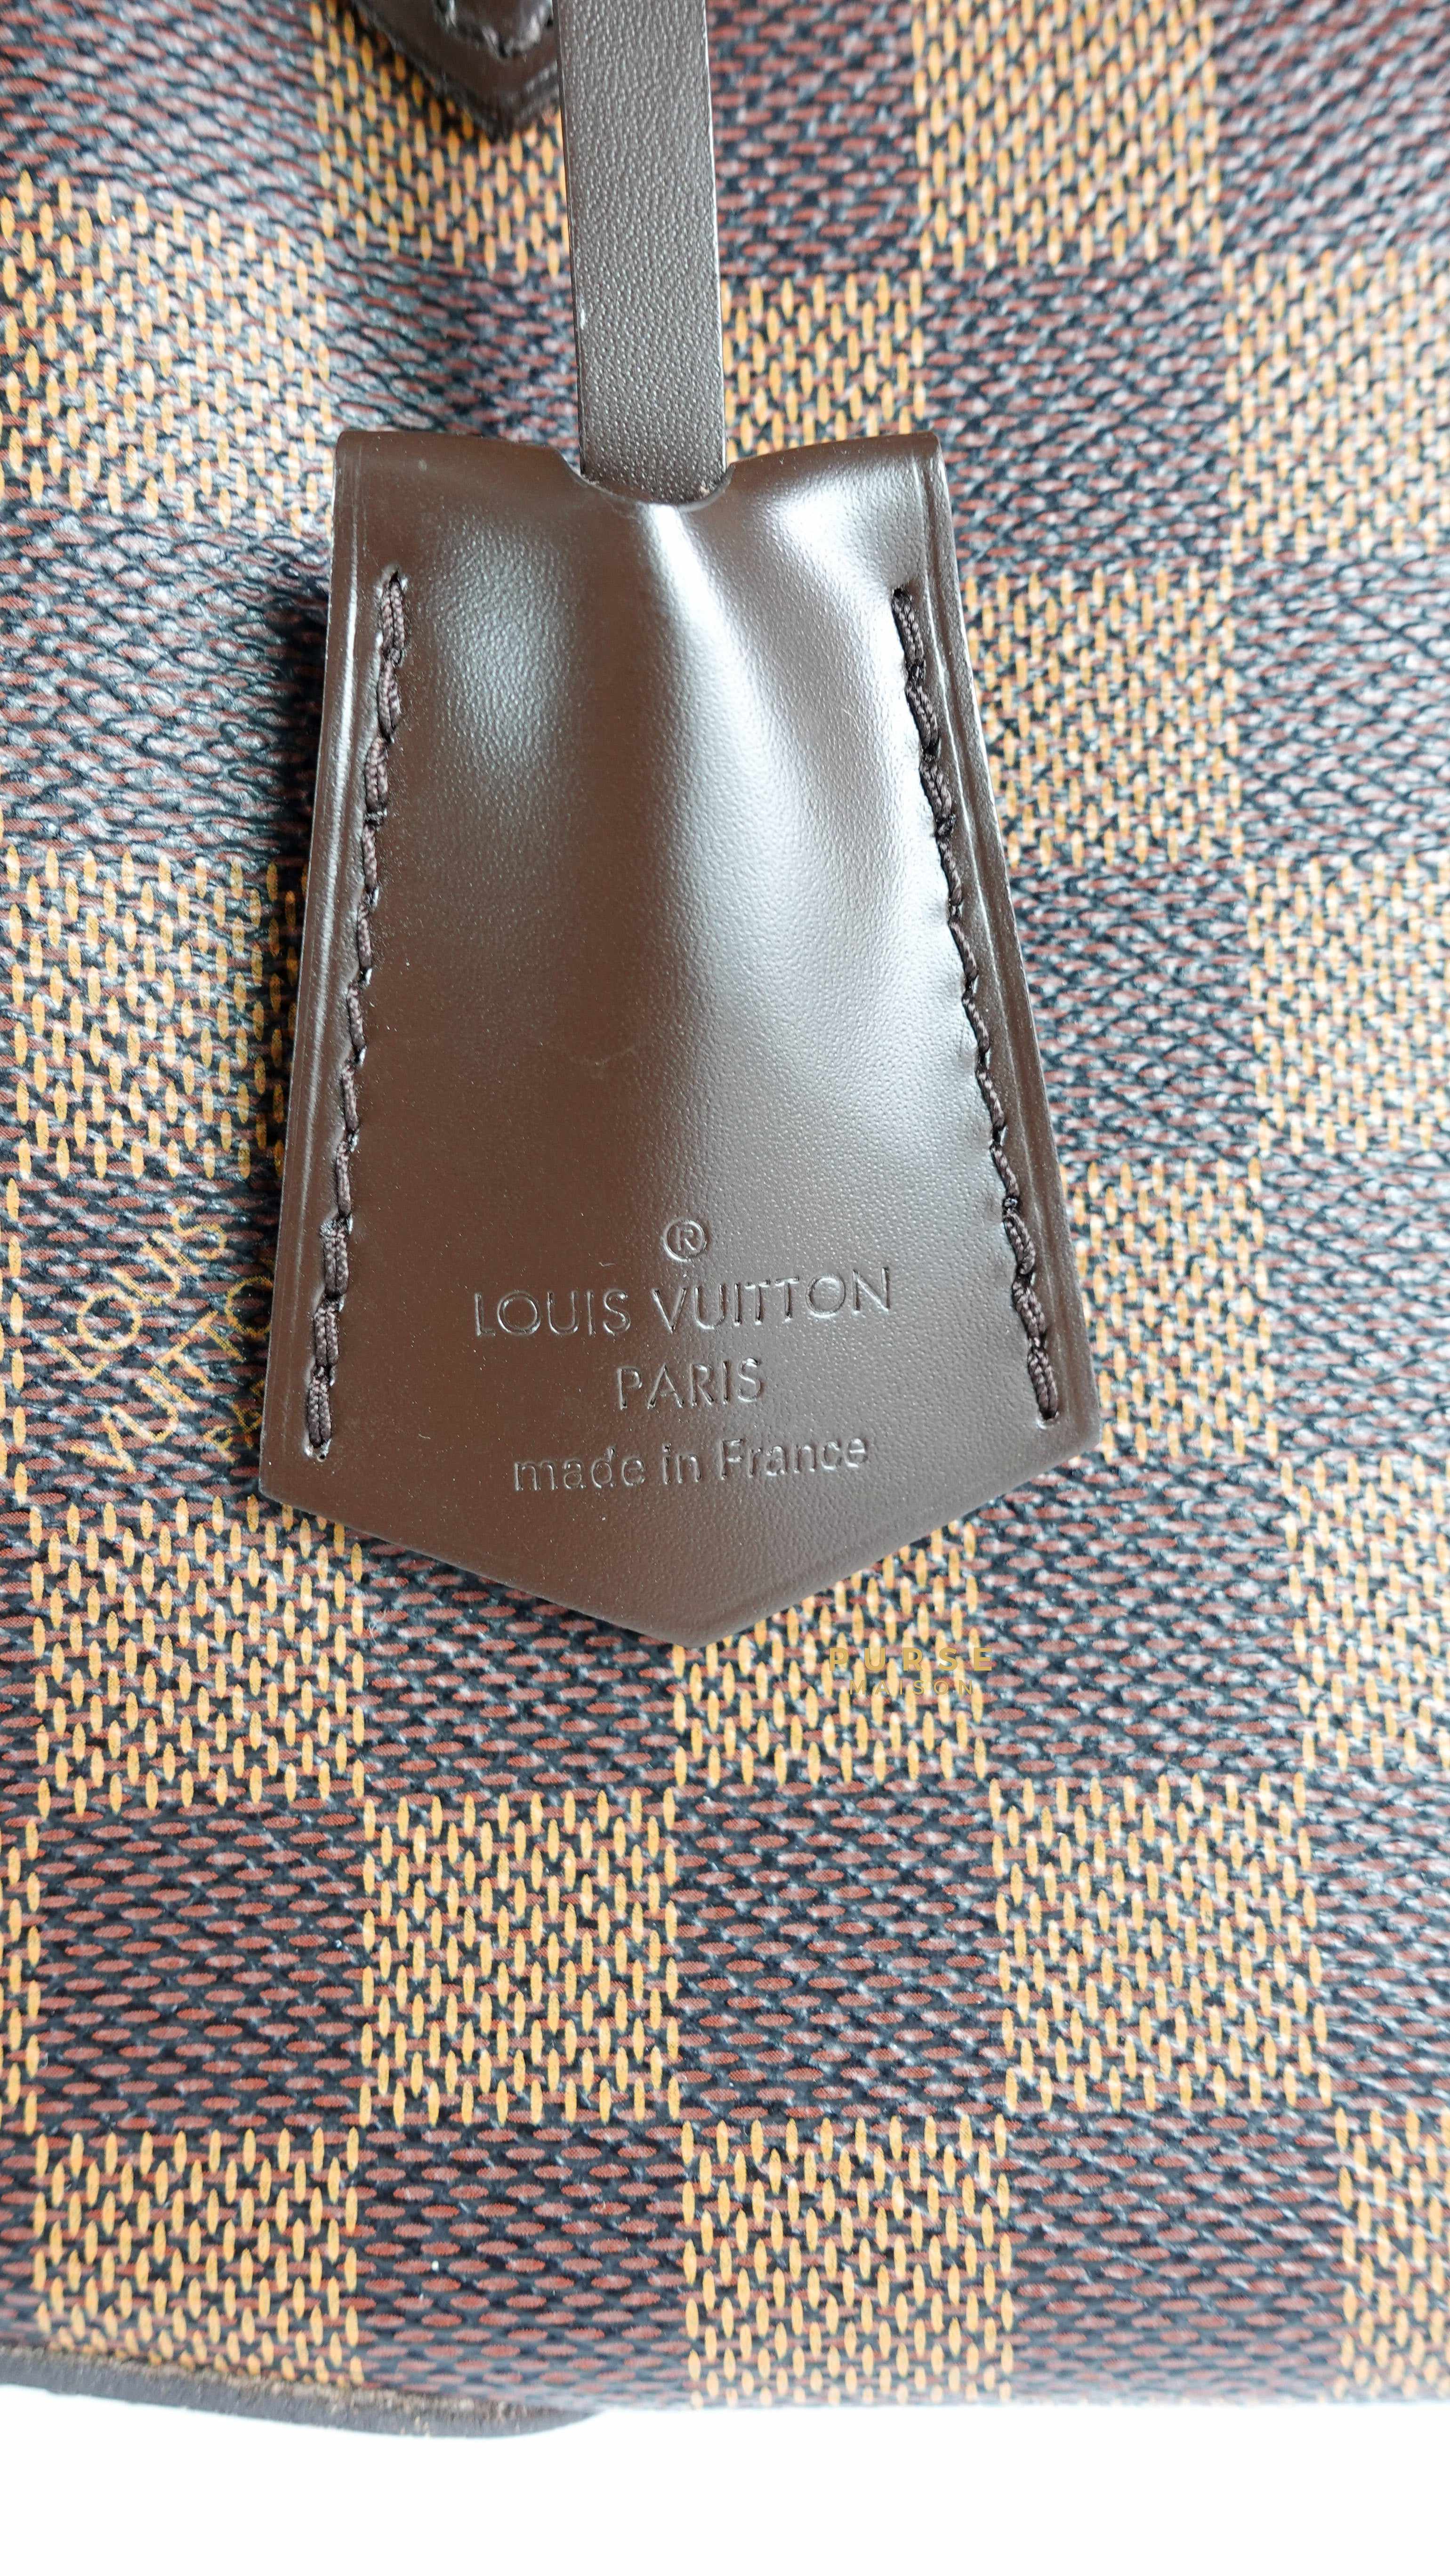 Date Code & Stamp] Louis Vuitton Verona PM Damier Ébène Canvas